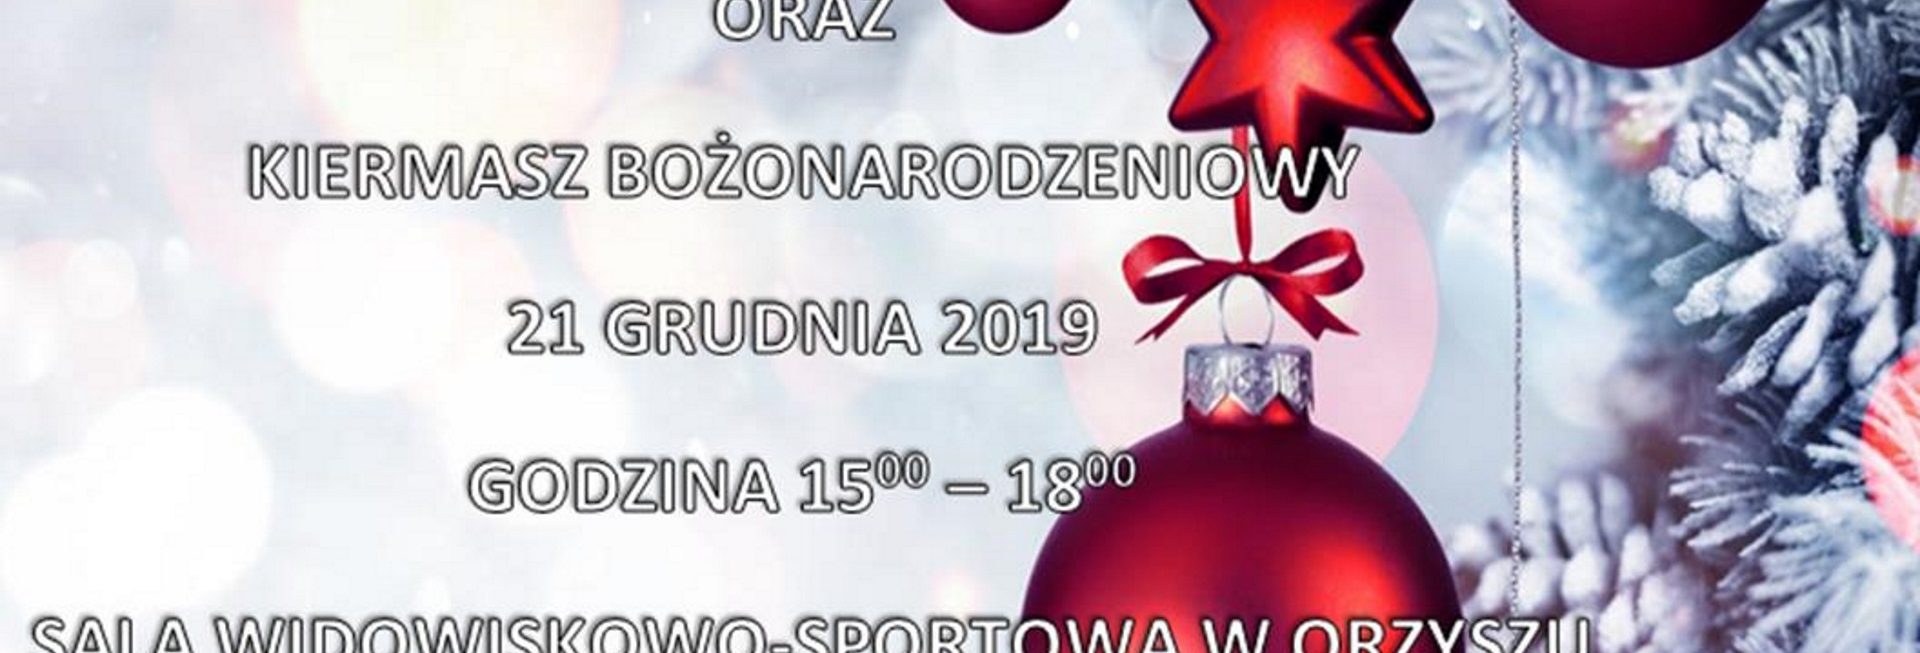 Plakat graficzny informujący o Kiermaszu Bożonarodzeniowym w Orzyszu. Plakat w scenerii świątecznej tło białe, zarys choinki z czerwonymi bombkami.   